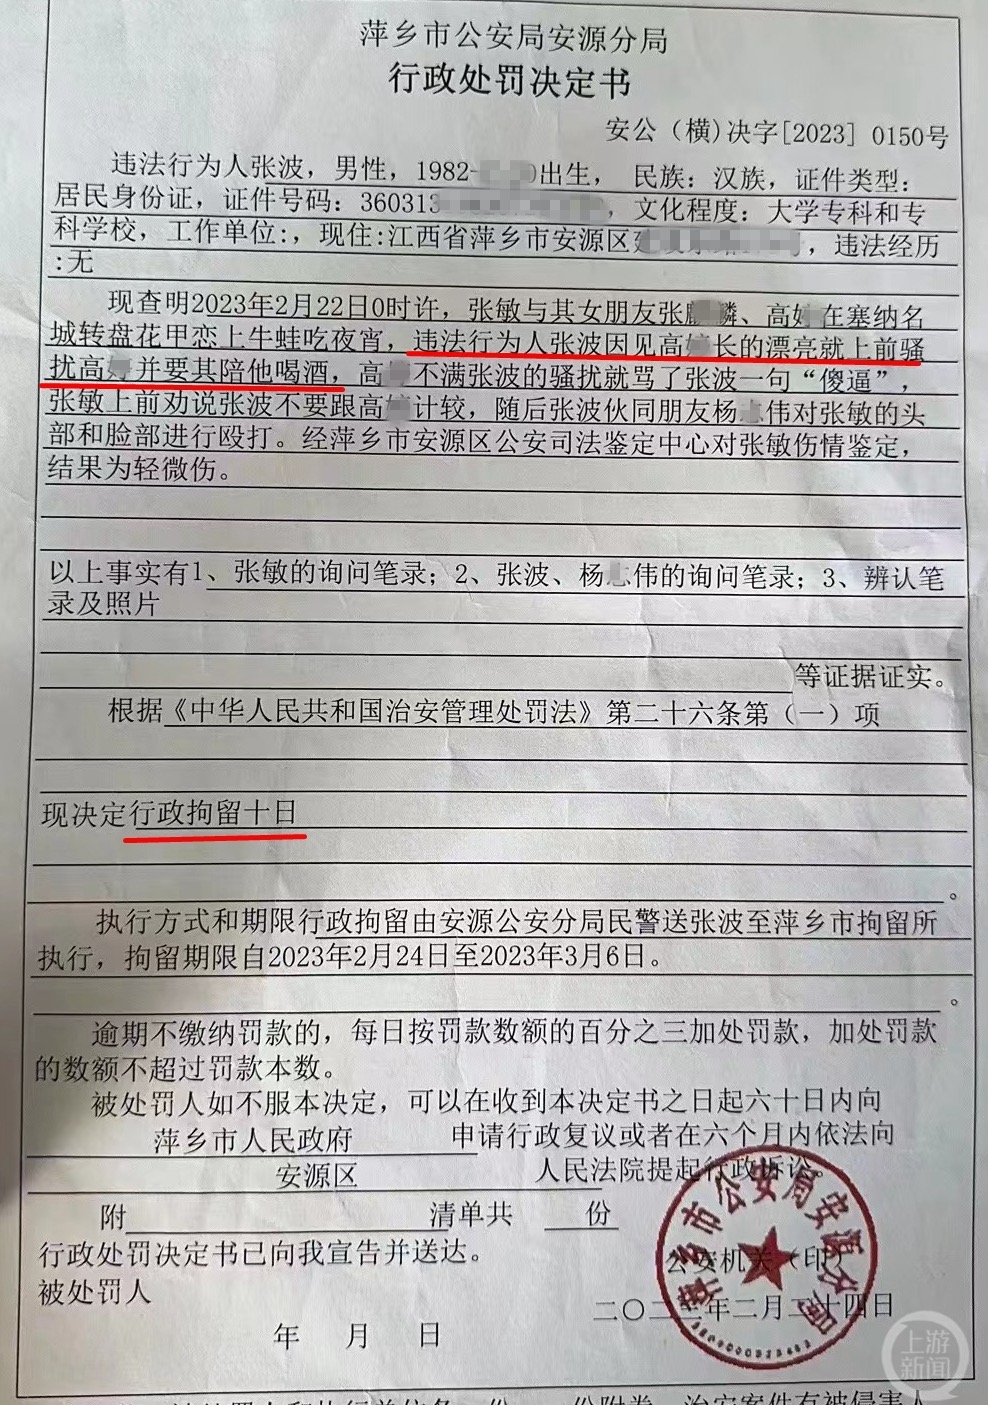 警方行政处罚文书显示，张波因骚扰女性遭拒打人被行政拘留10日。 受访者供图